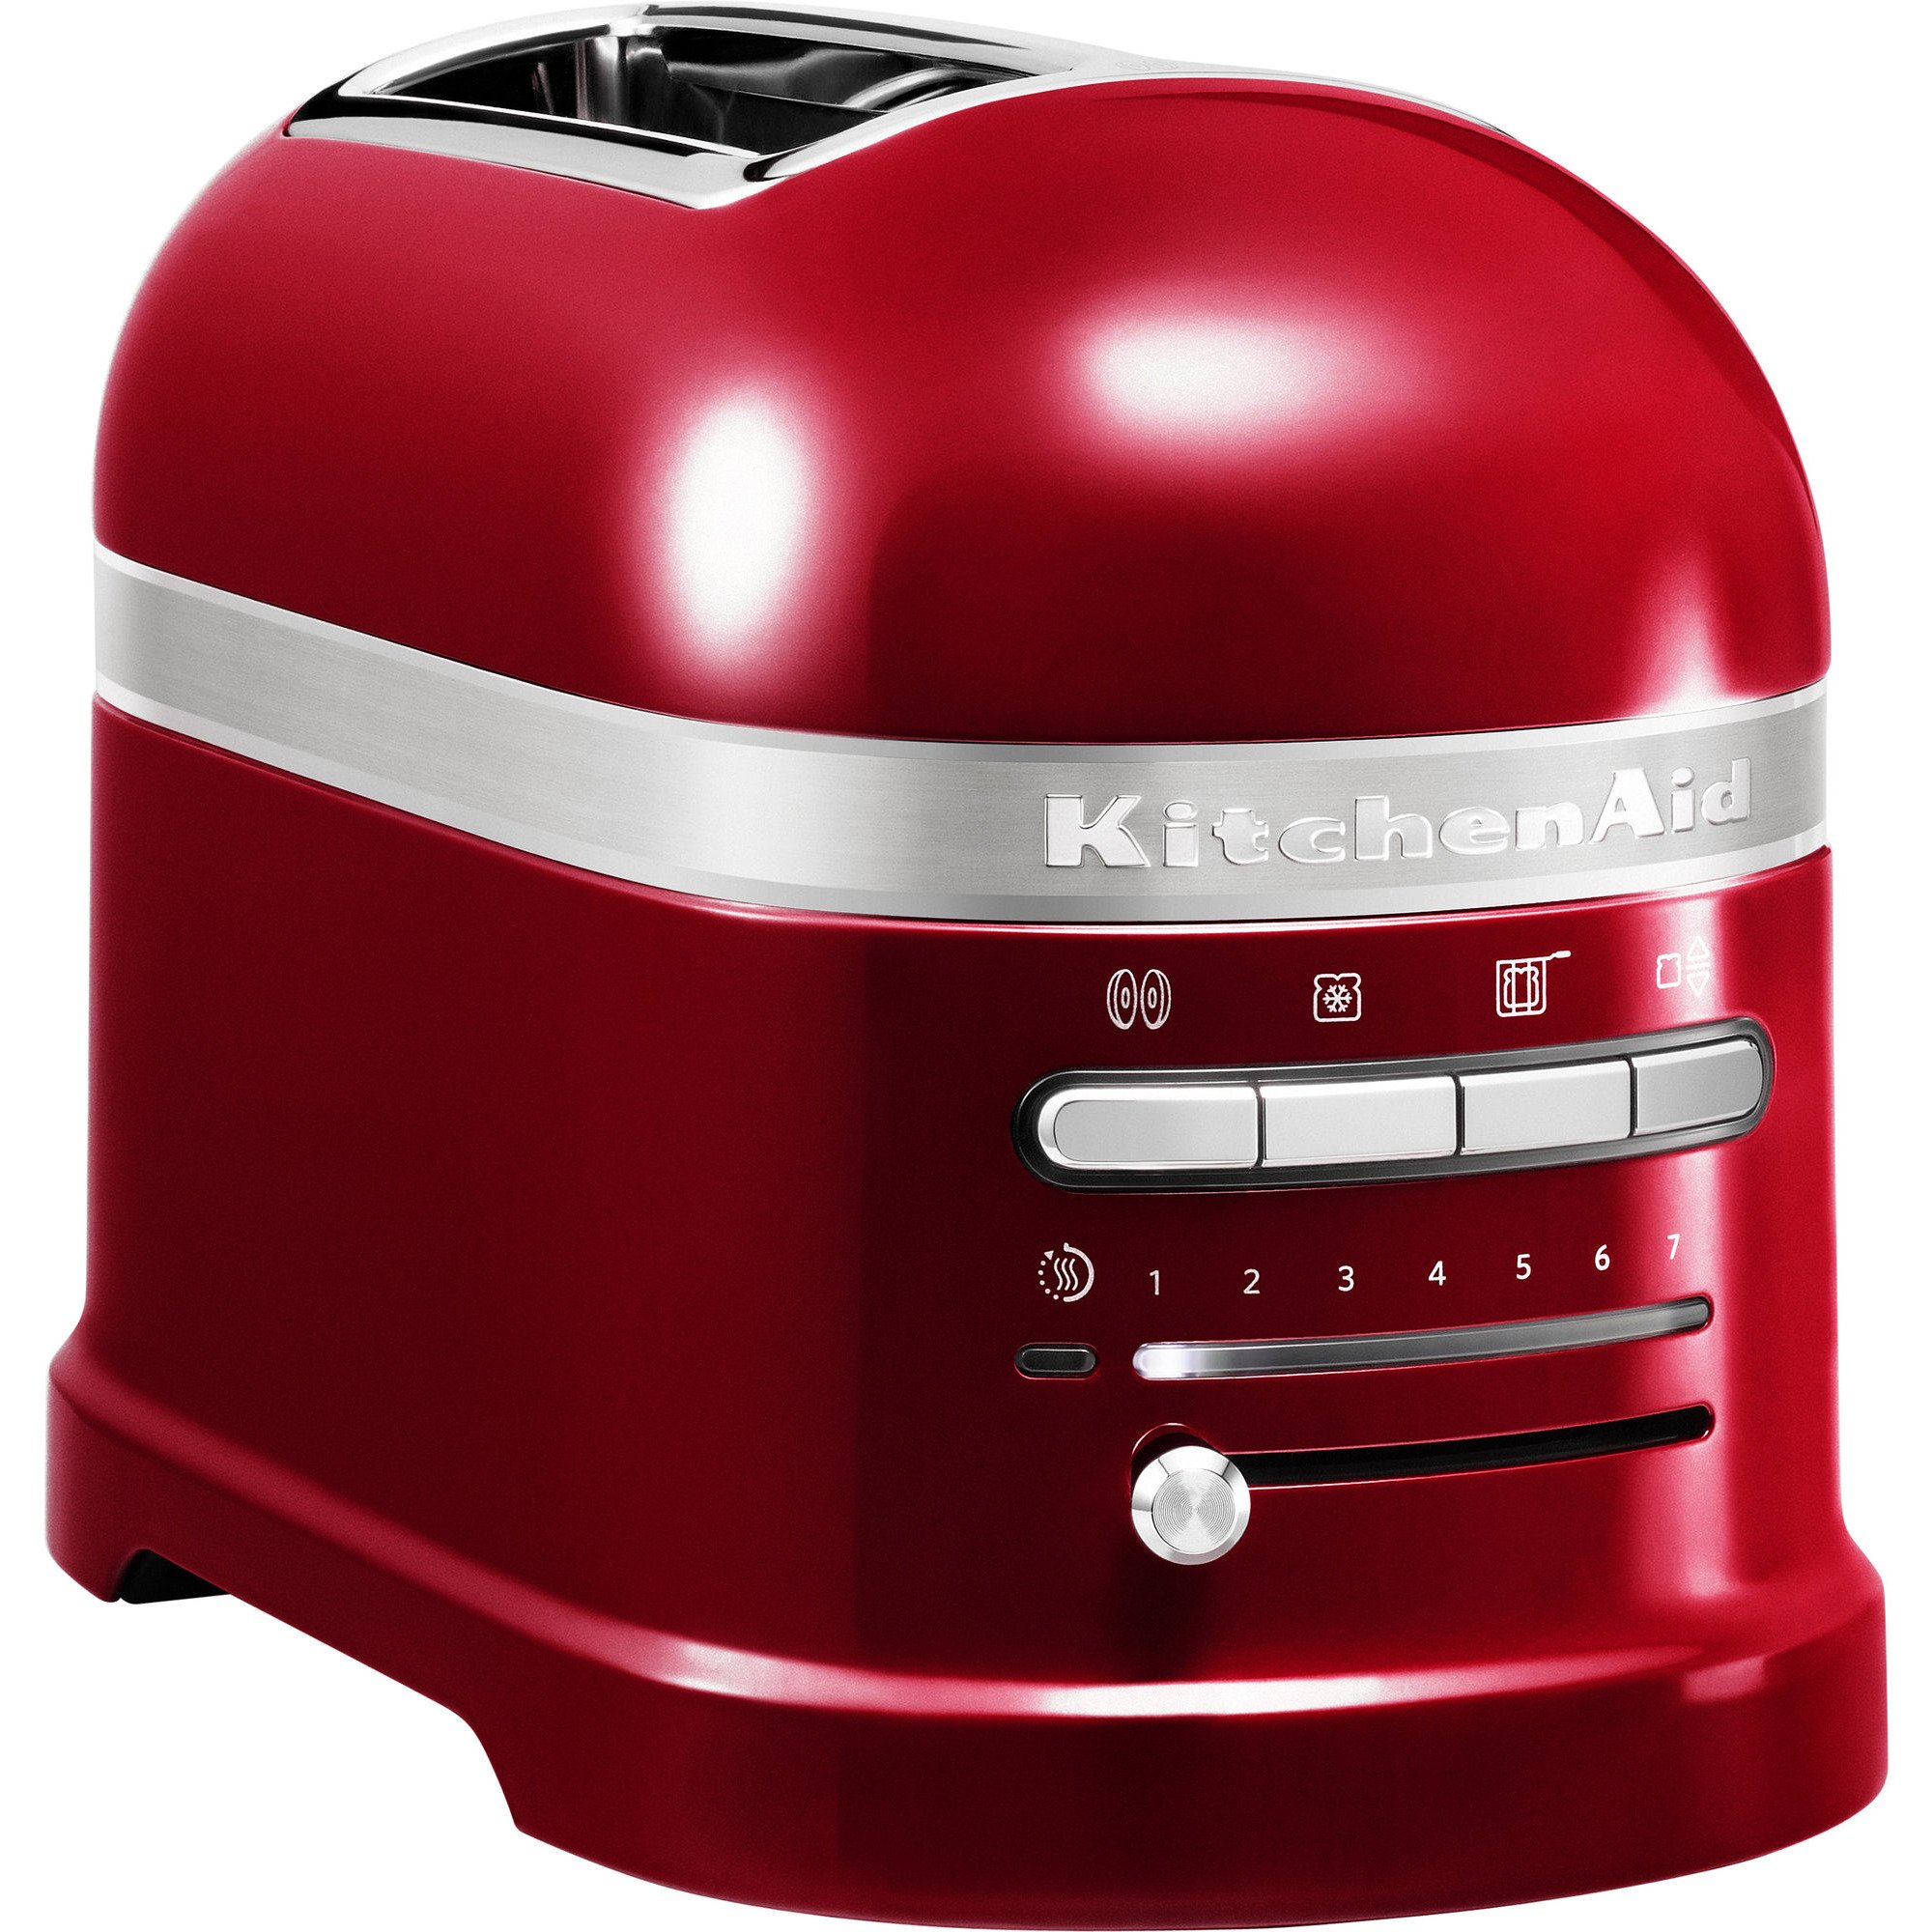 KitchenAid Artisan toaster 2-skiver rød metallic